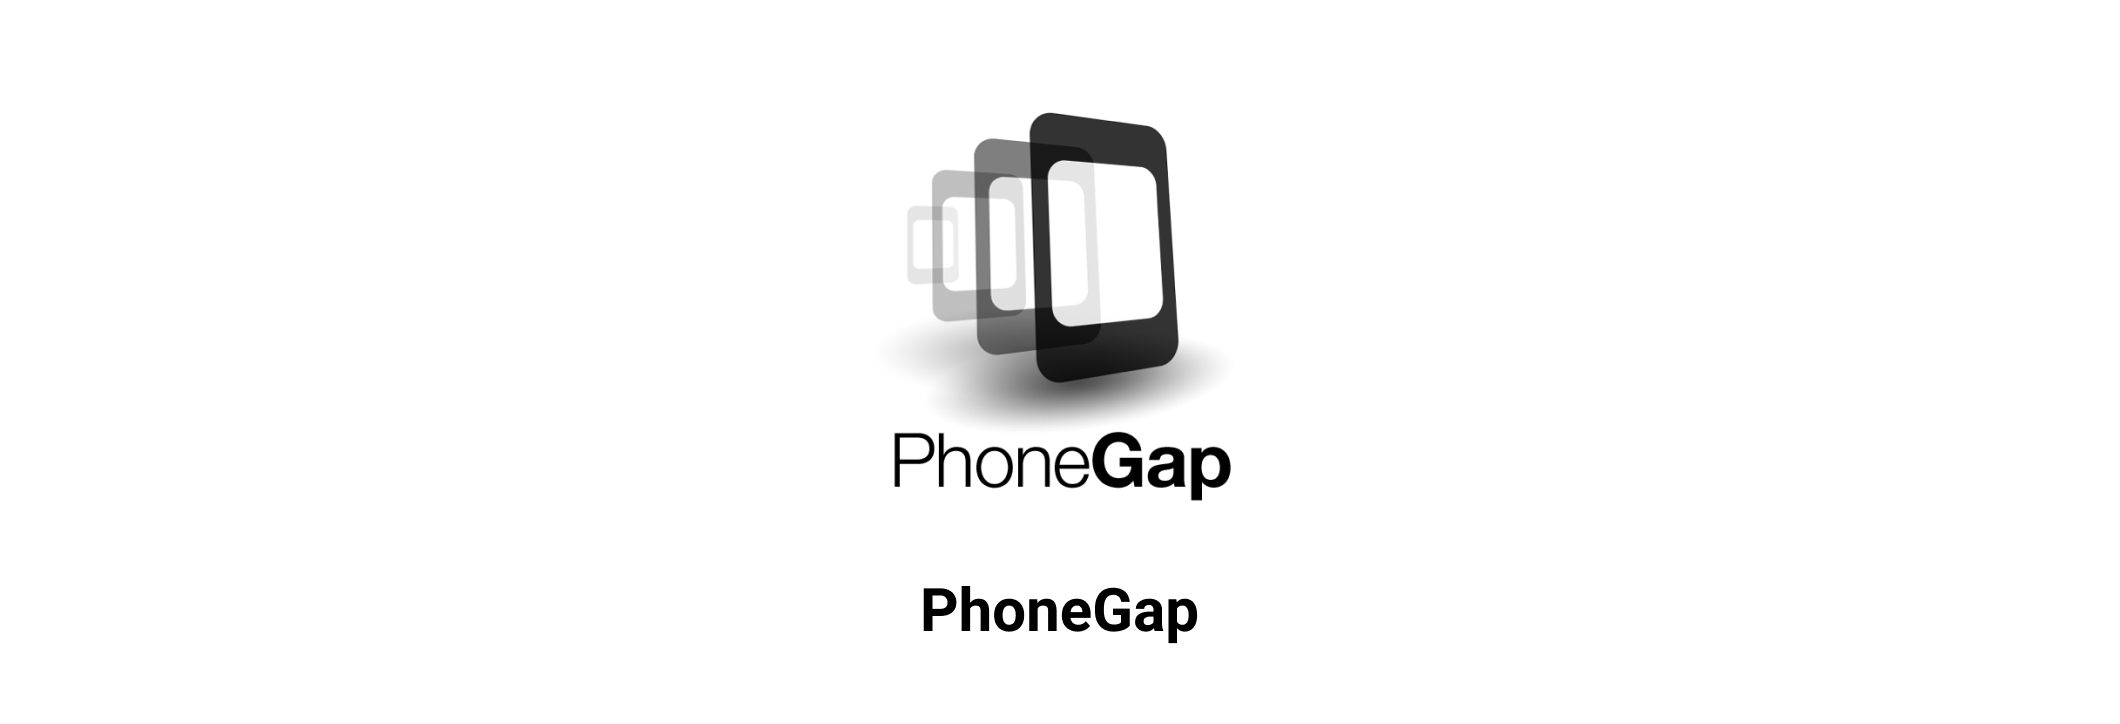 PhoneGap-1